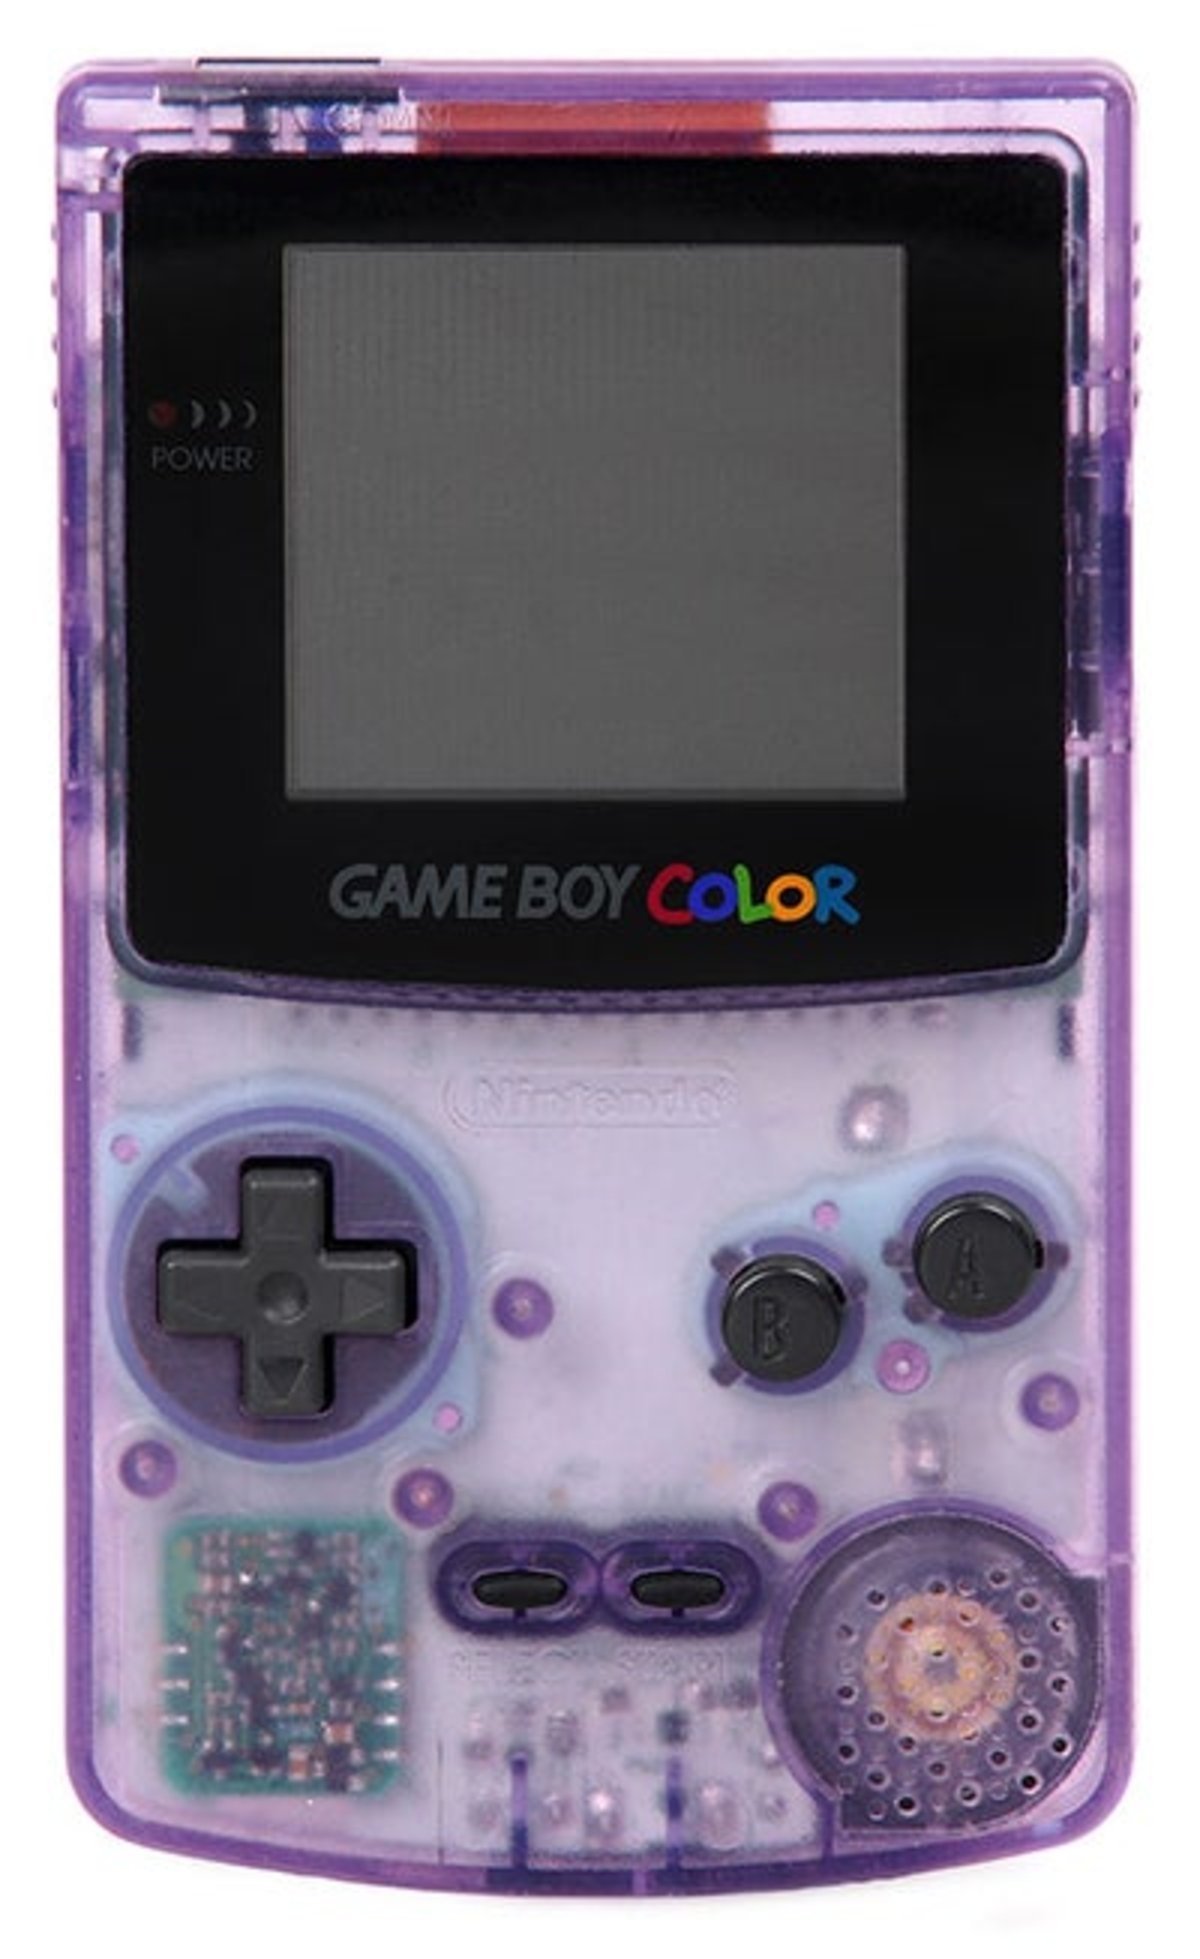 Primer plano de uno de los modelos de Game Boy Color